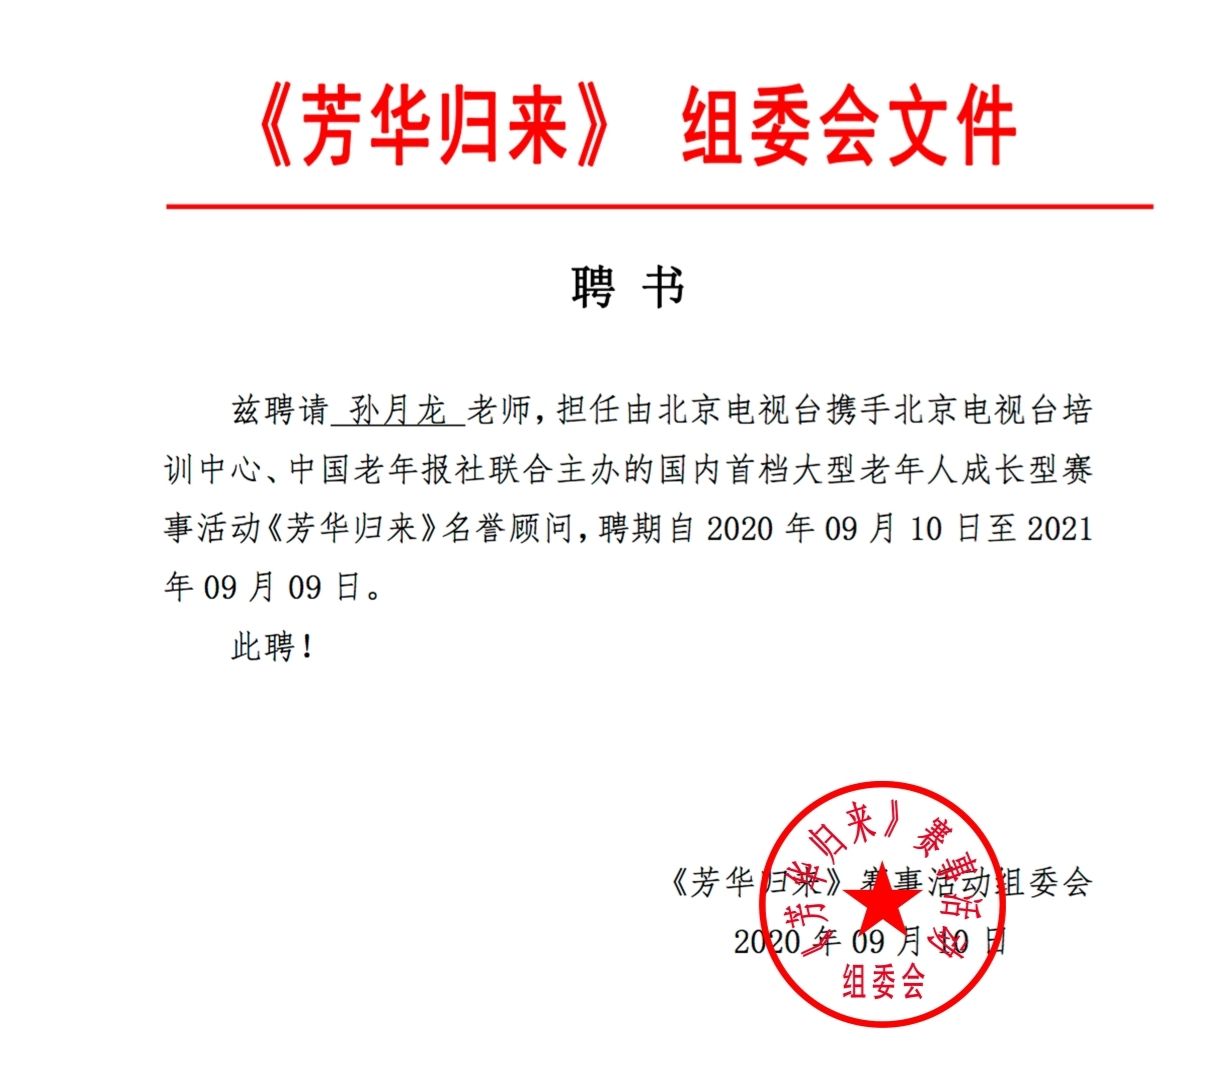 中国管理科学研究院艺术中心聘任孙月龙担任副秘书长